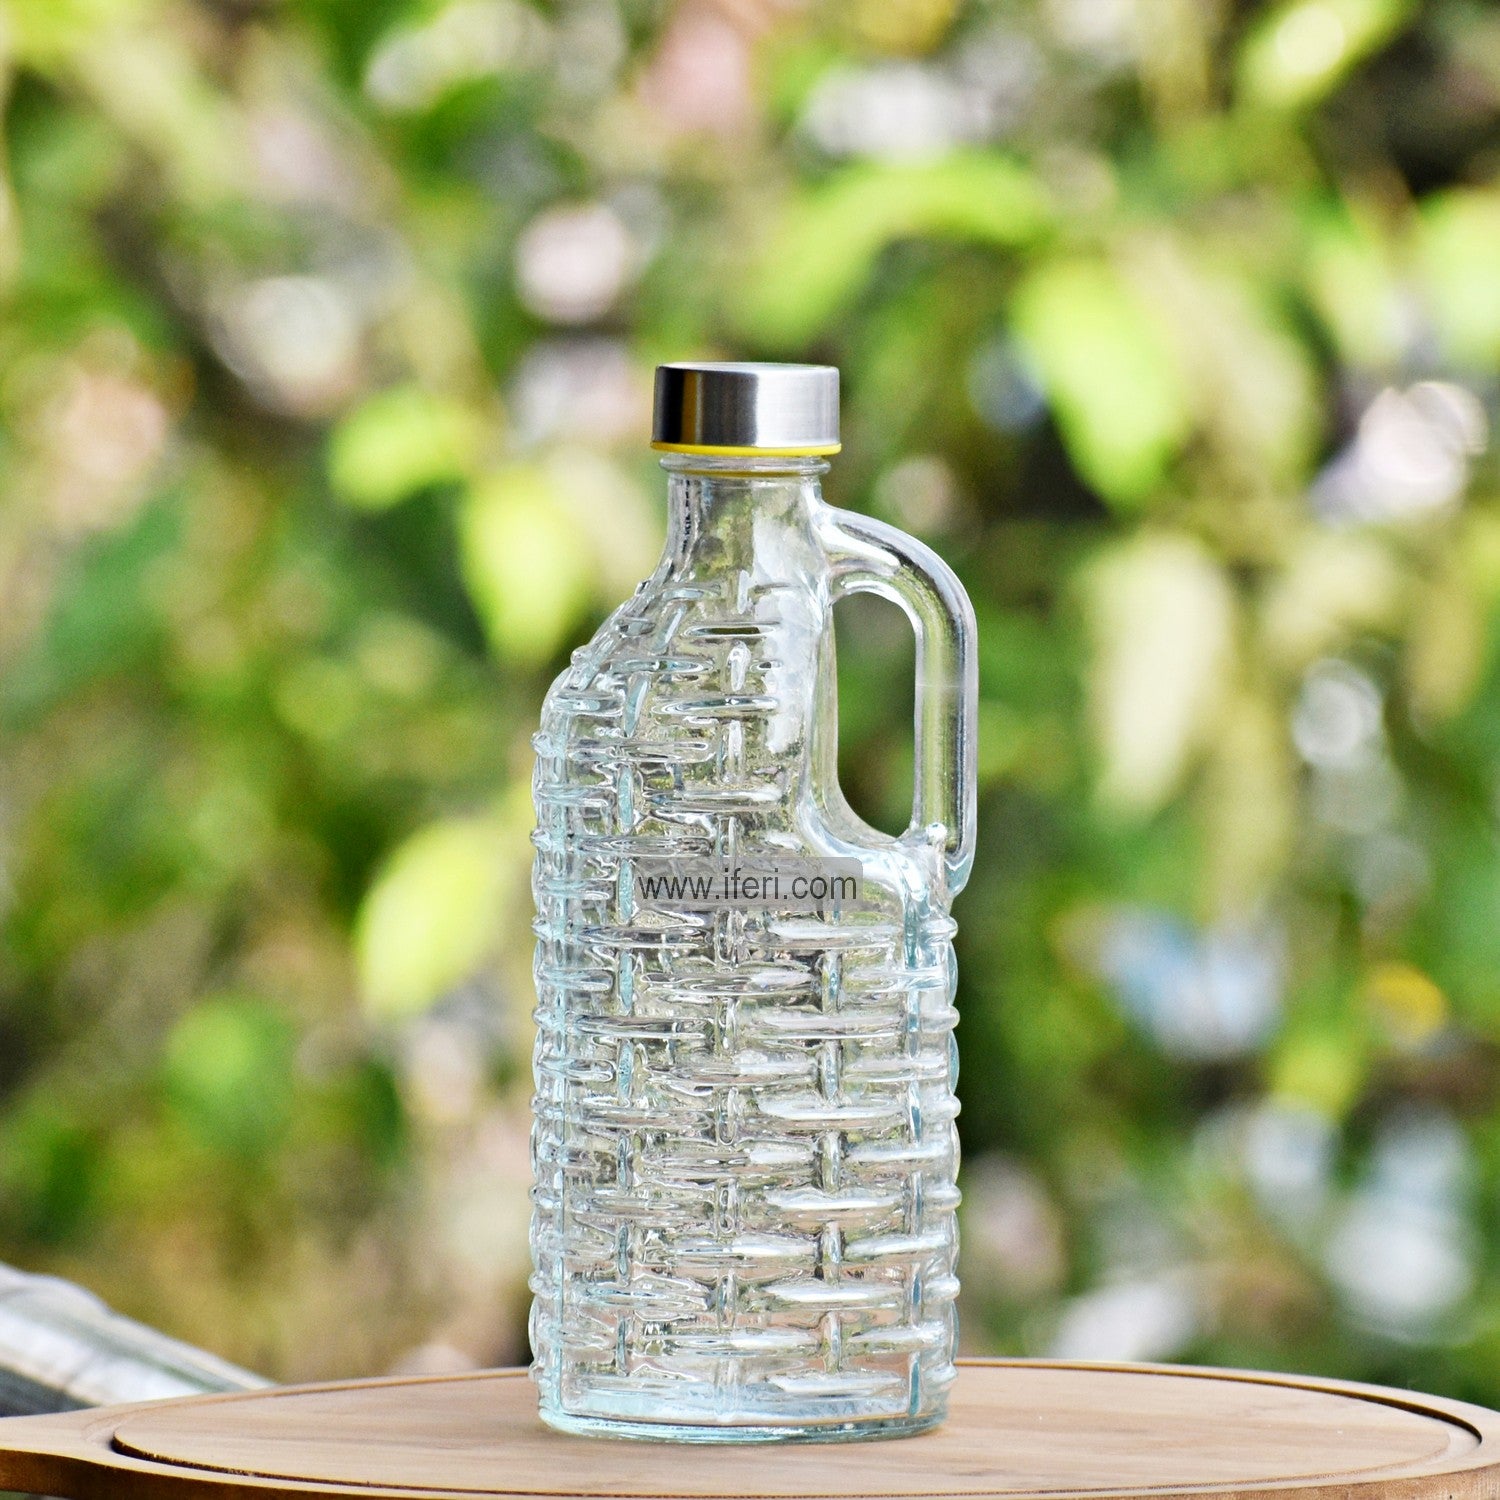 1 Liter Glass Water Bottle Best Online price in Bangladesh